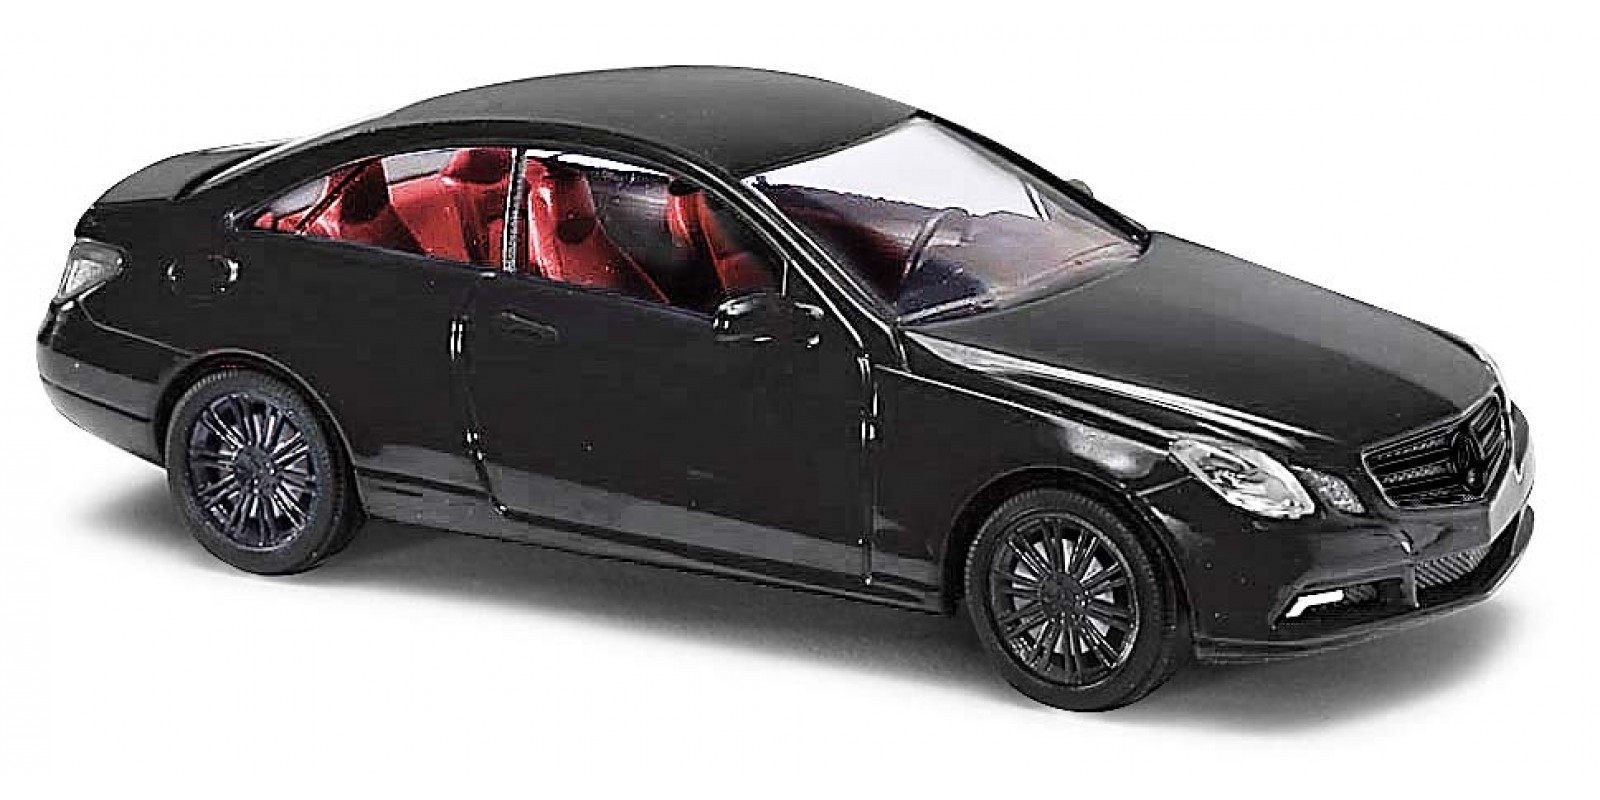 BU41659 Mercedes E-Klasse Coupé »Black Edition«